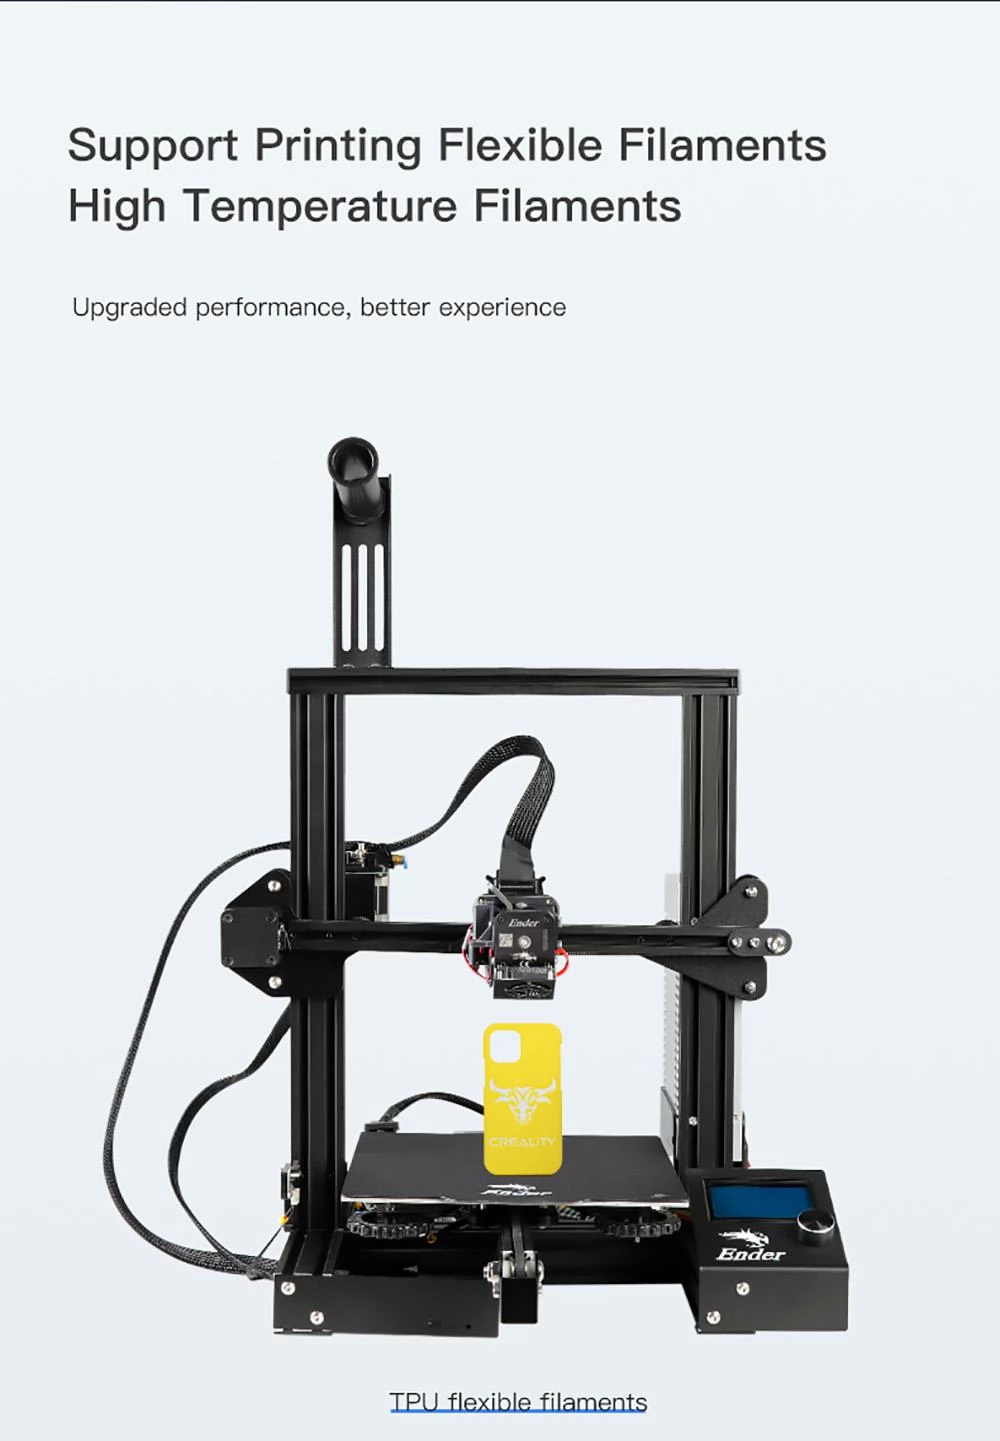 Creality Sprite Extruder Pro Kit 300°C Hoge Temperatuur Afdrukken voor Ender-3 S1 /S1 PRO CR10 Smart Pro 3D Printer